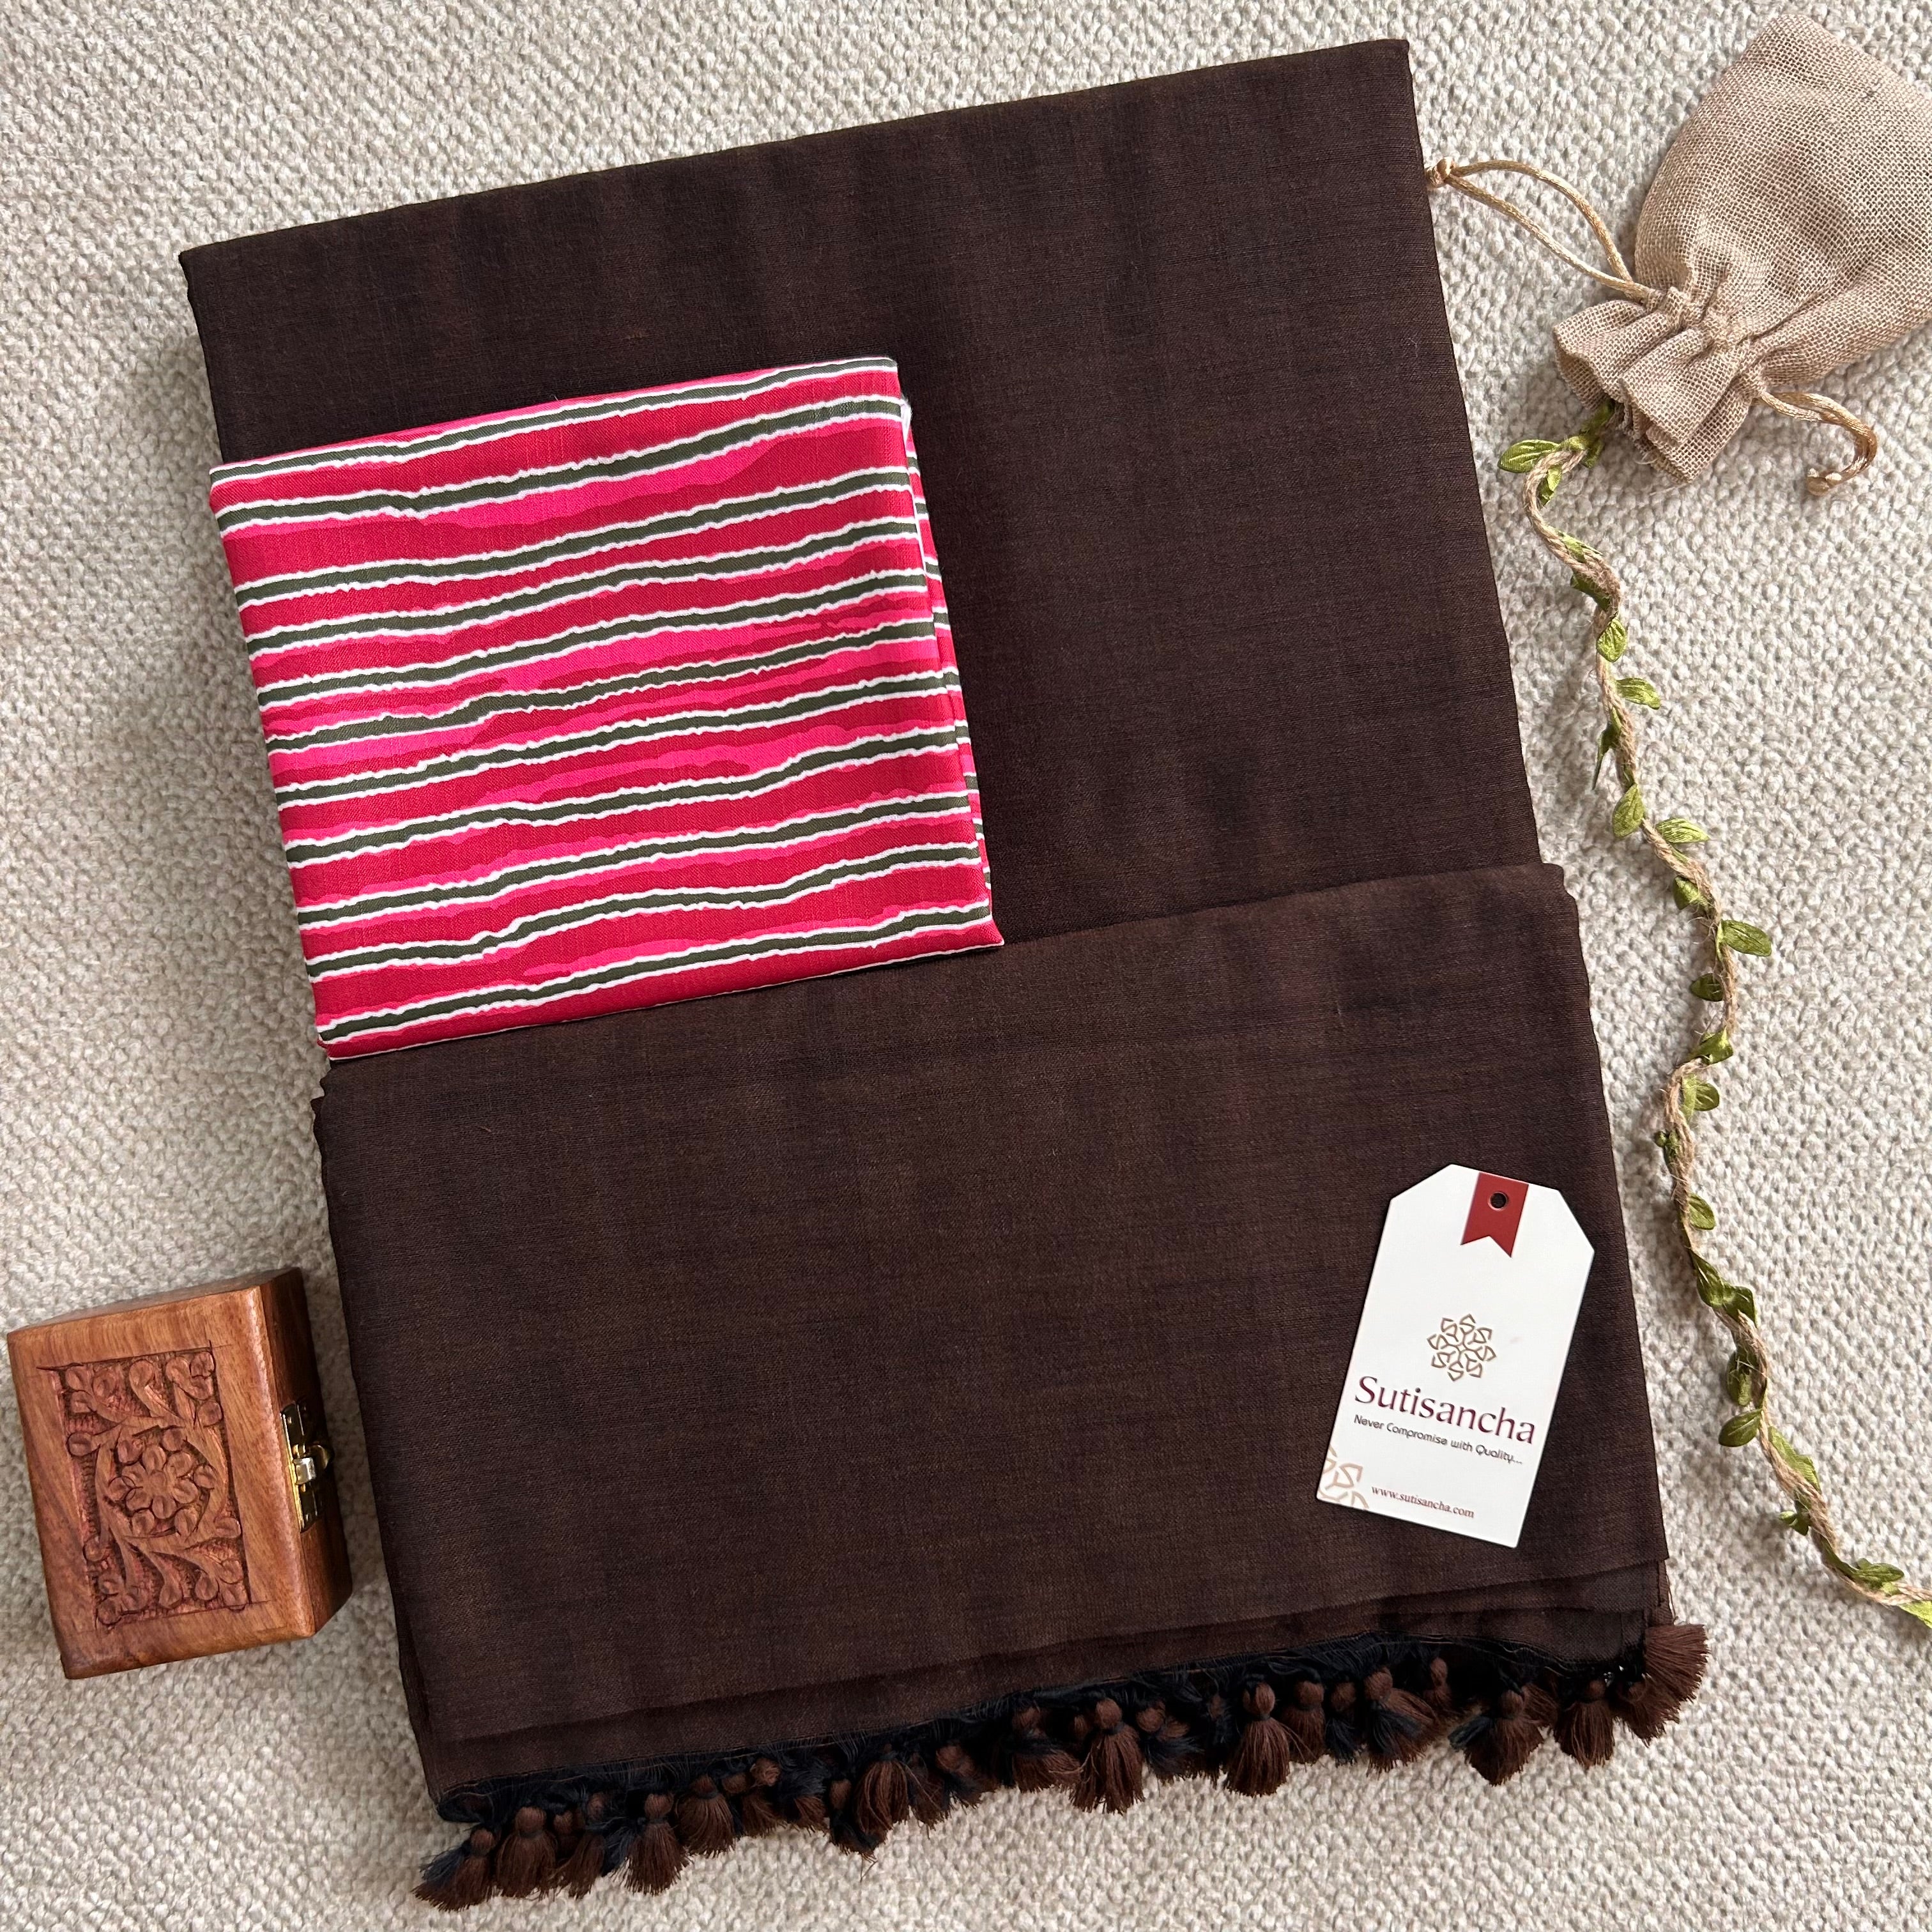 Sutisancha Brown Colour Handloom Cotton Saree